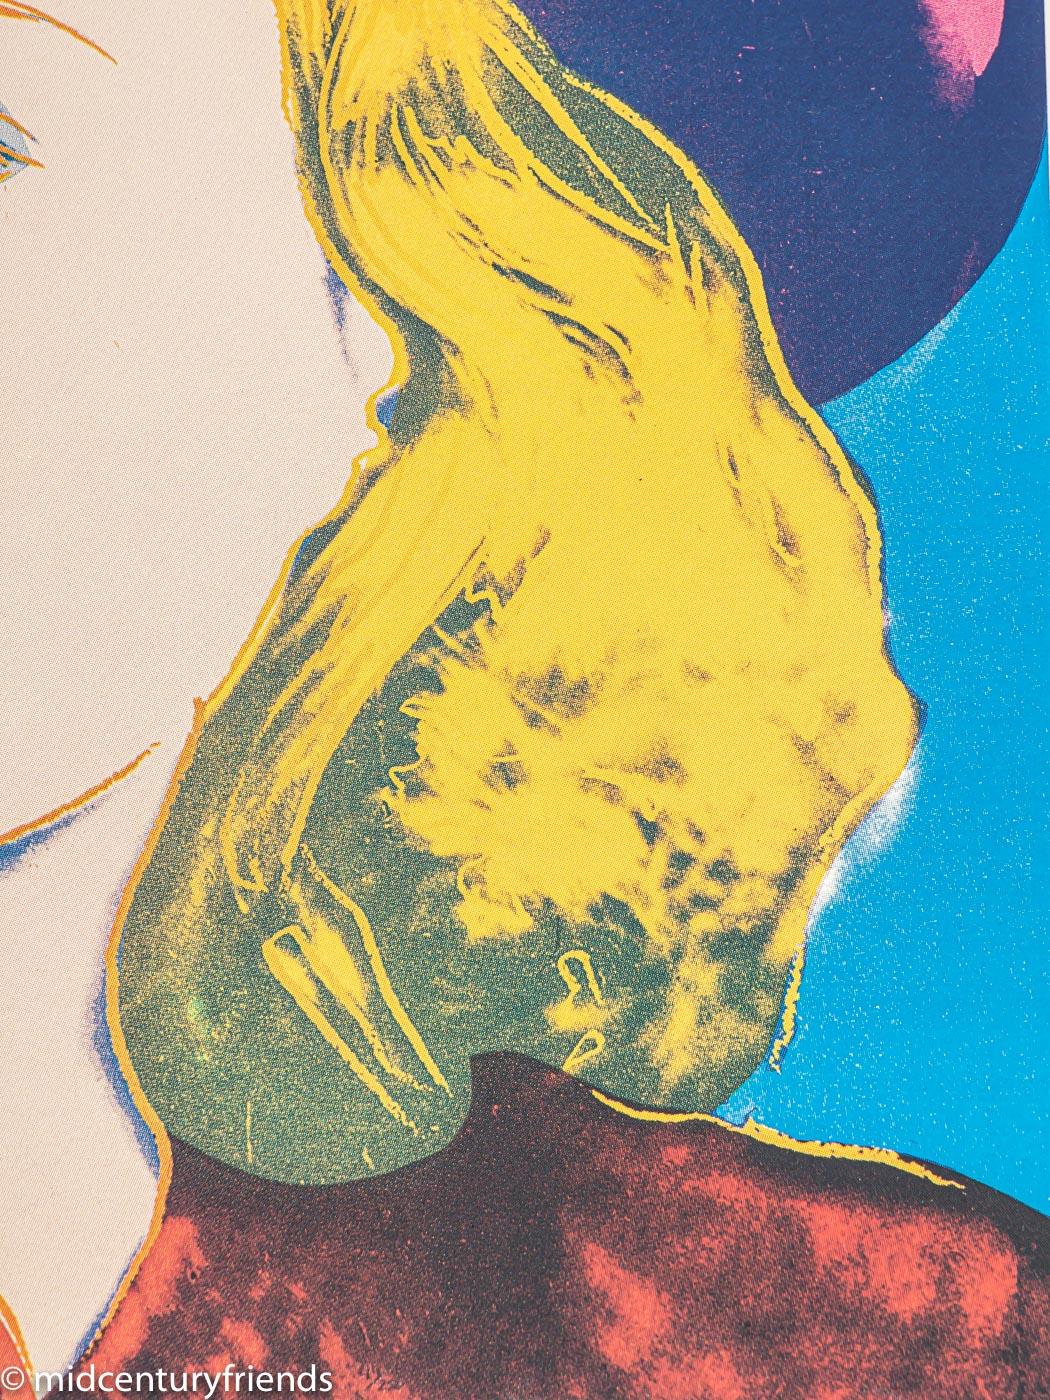 Originalplakat für die Ausstellung von Andy Warhol in Malmö im Dezember 1983. Weltberühmtes Kunstwerk von Andy Warhol, der 1983 das Ingrid-Bergman-Portfolio veröffentlichte. Fertig zum Aufhängen, gerahmt in einem Echtholz-Bilderrahmen in Weiß hinter